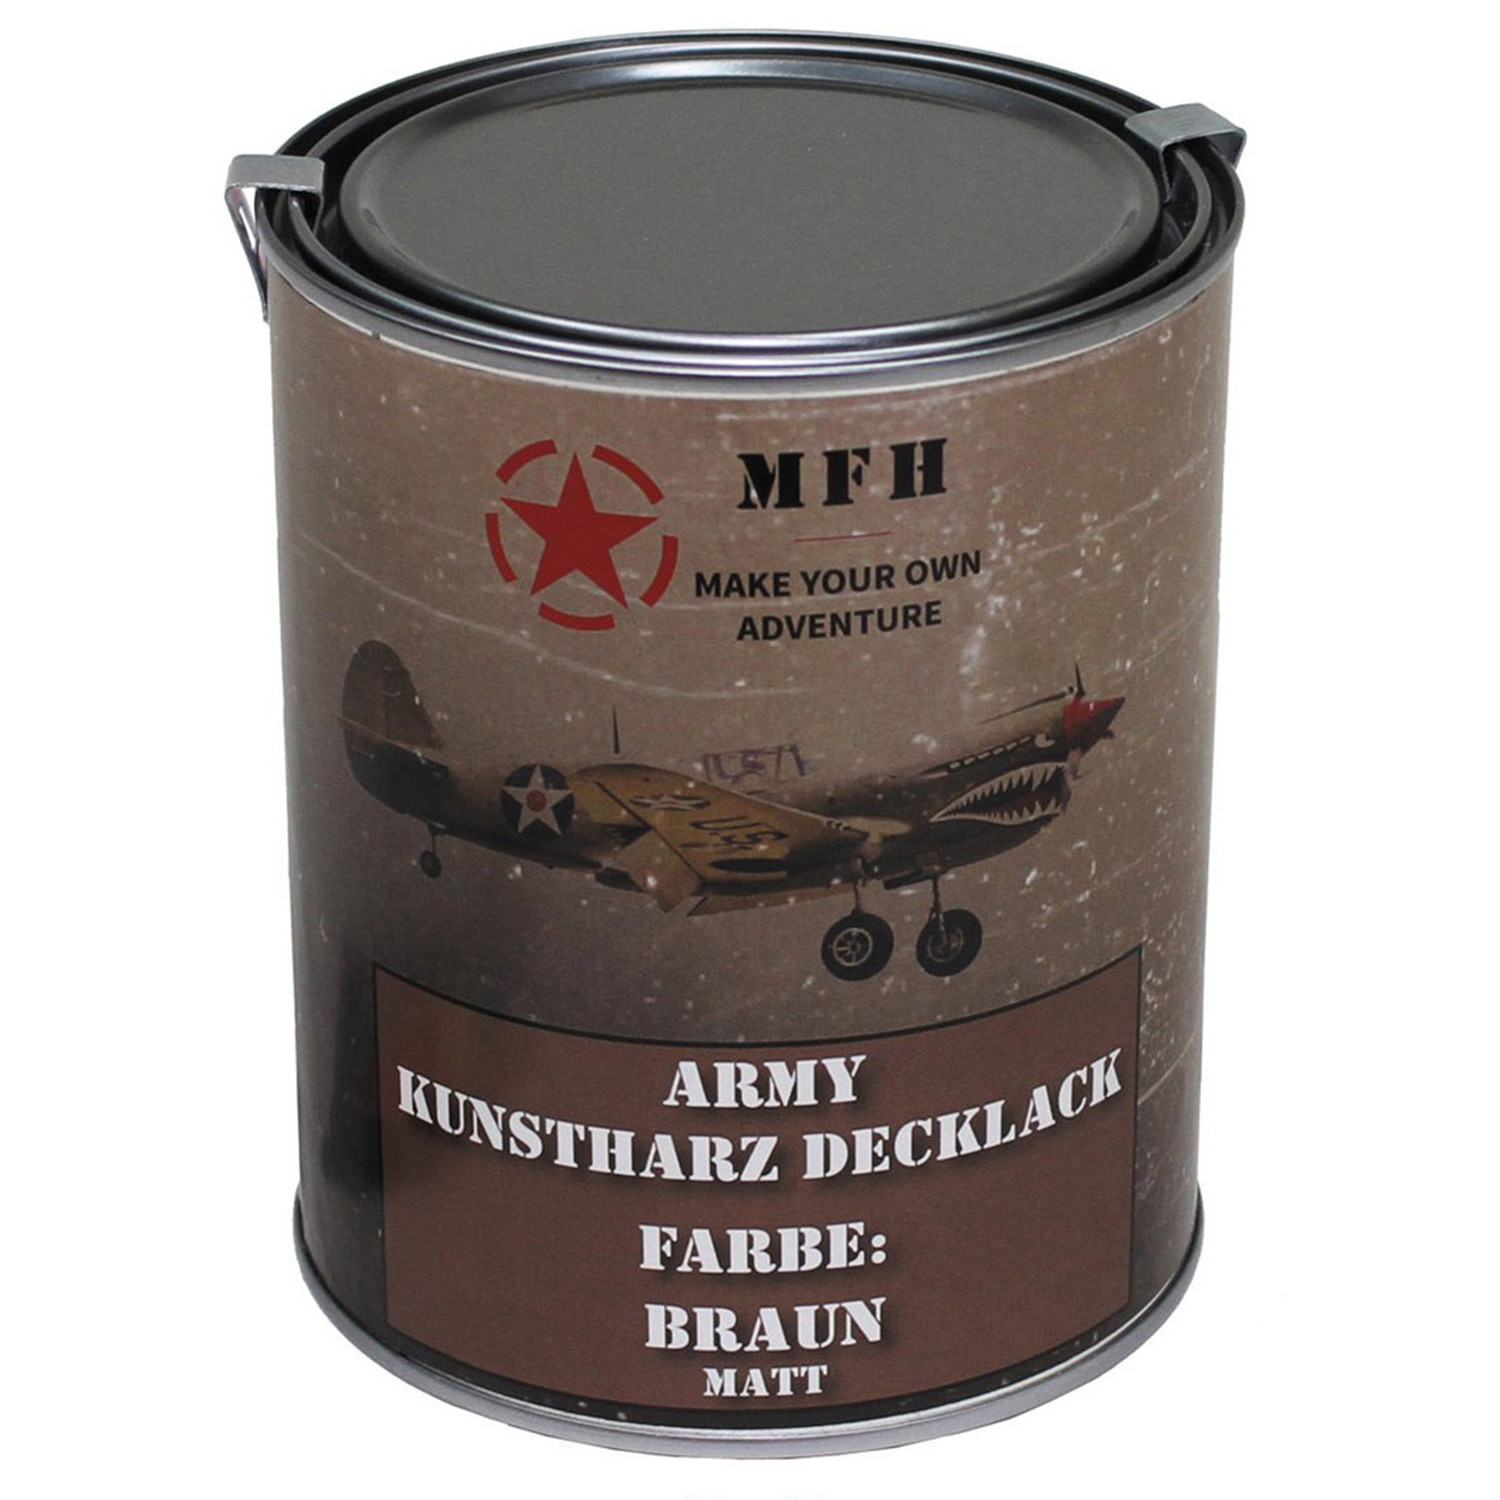 Army Kunstharz Decklack 1 Liter in Braun, matt (RAL 8027)